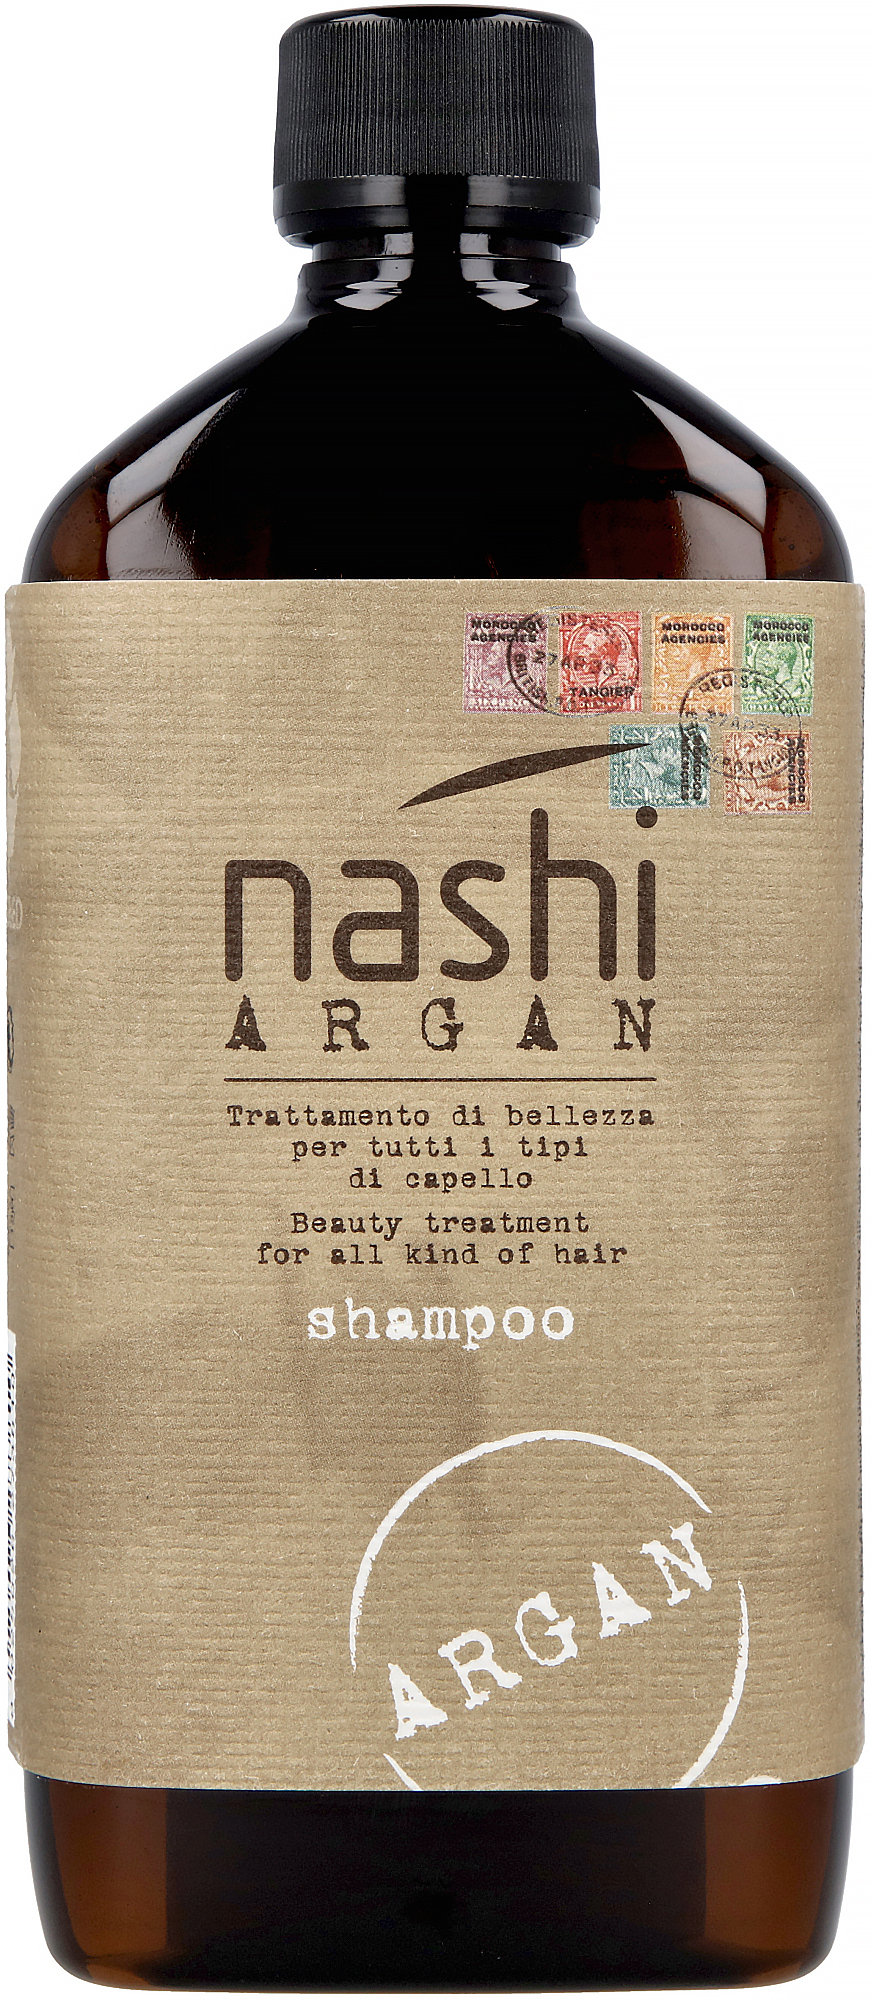 nashi argan szampon i odżywka